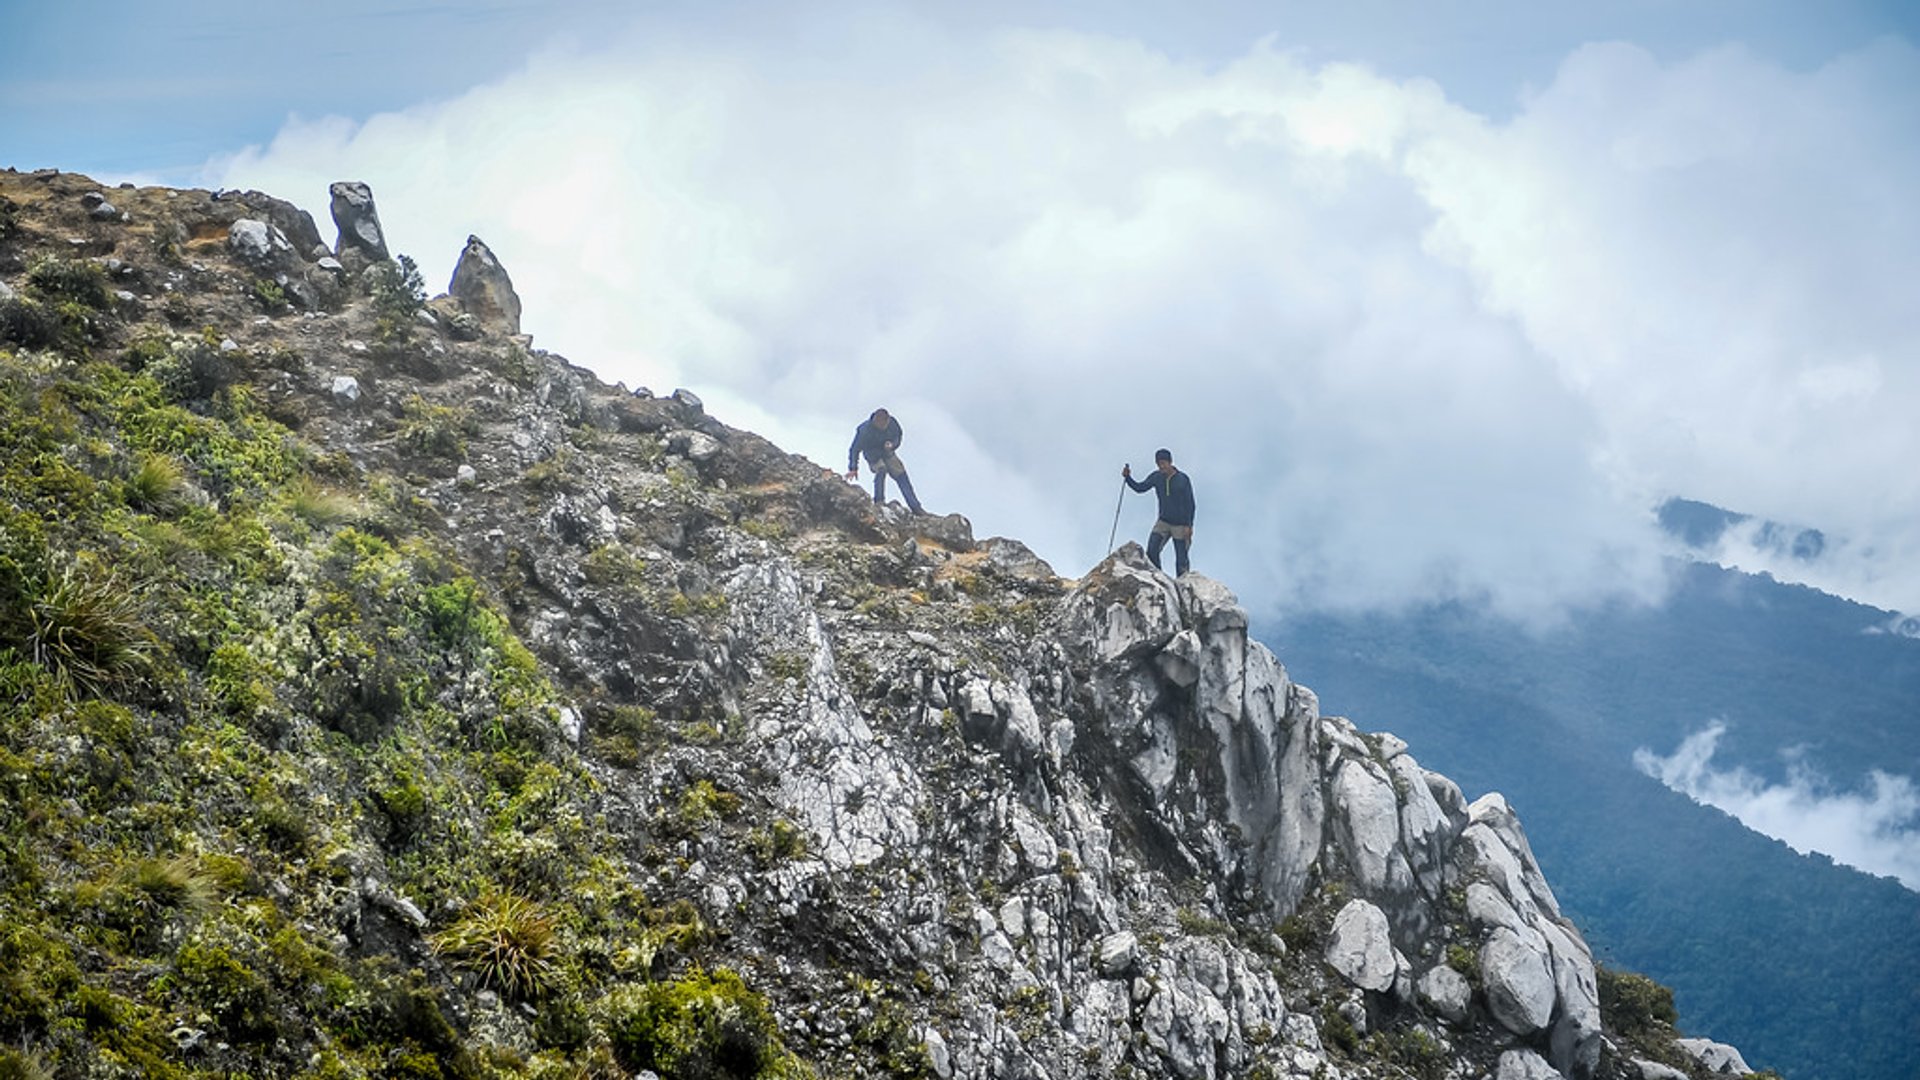 Climbing Mount Apo